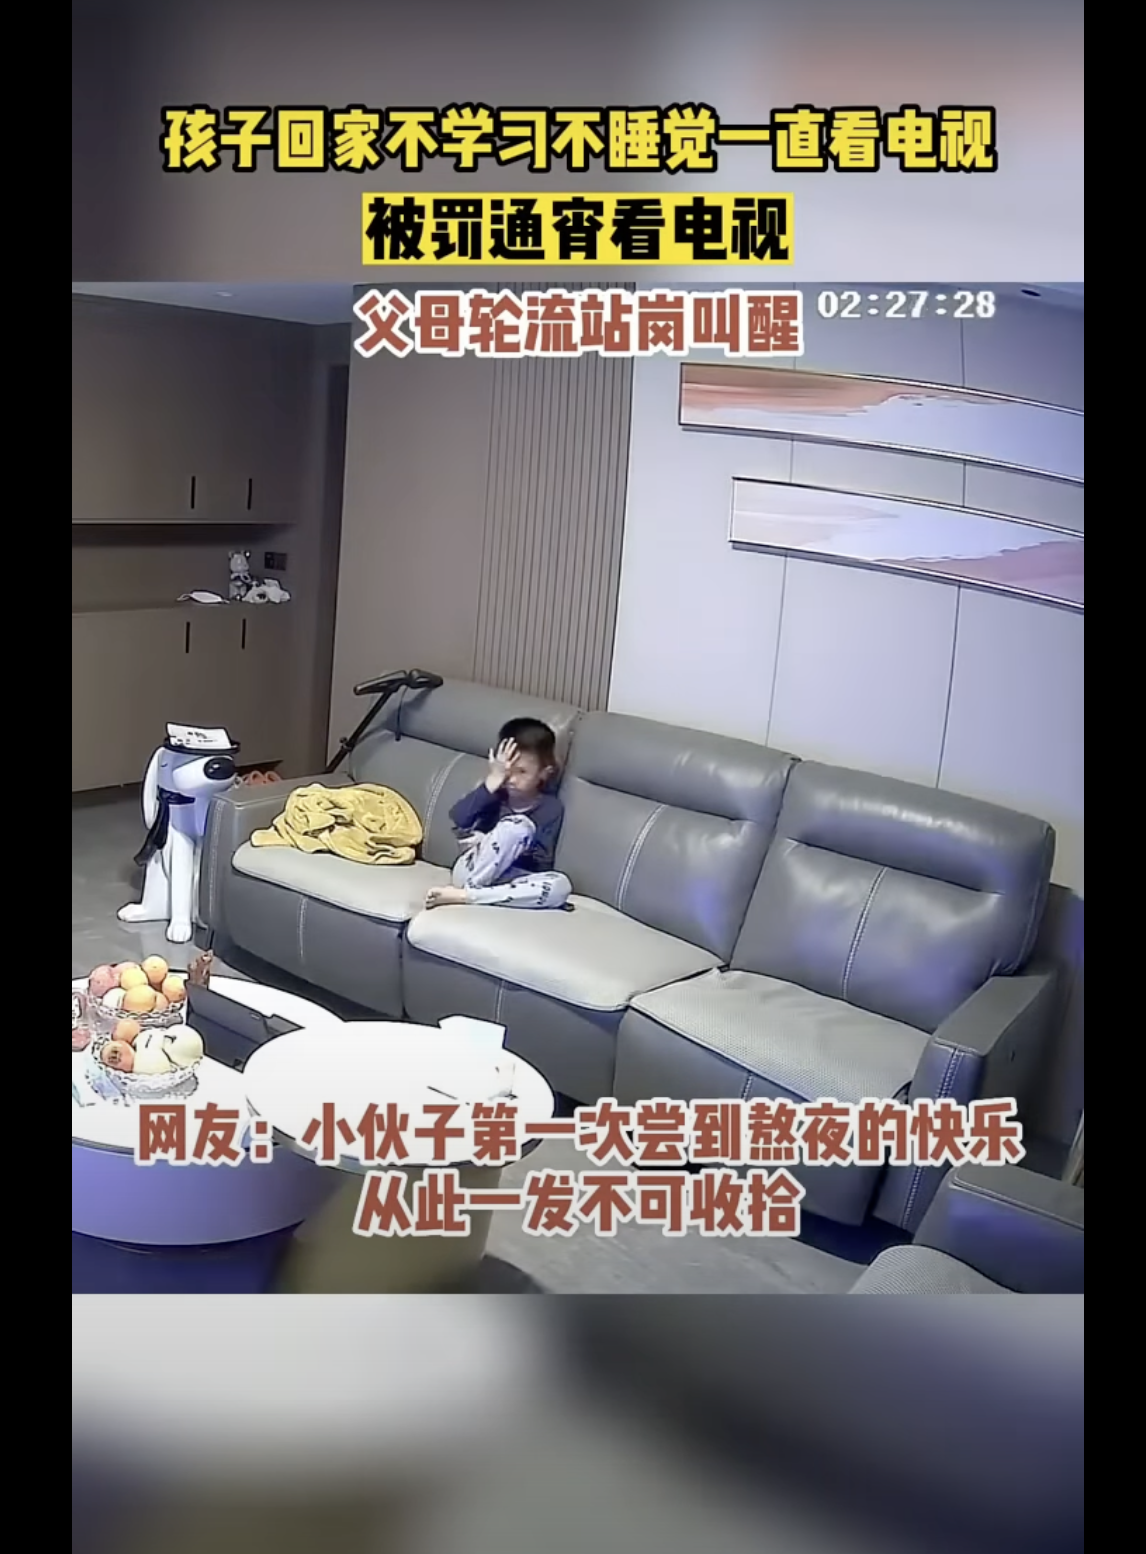 Le garçon est photographié assis sur le canapé du salon. | Source : youtube.com/趣事大赏